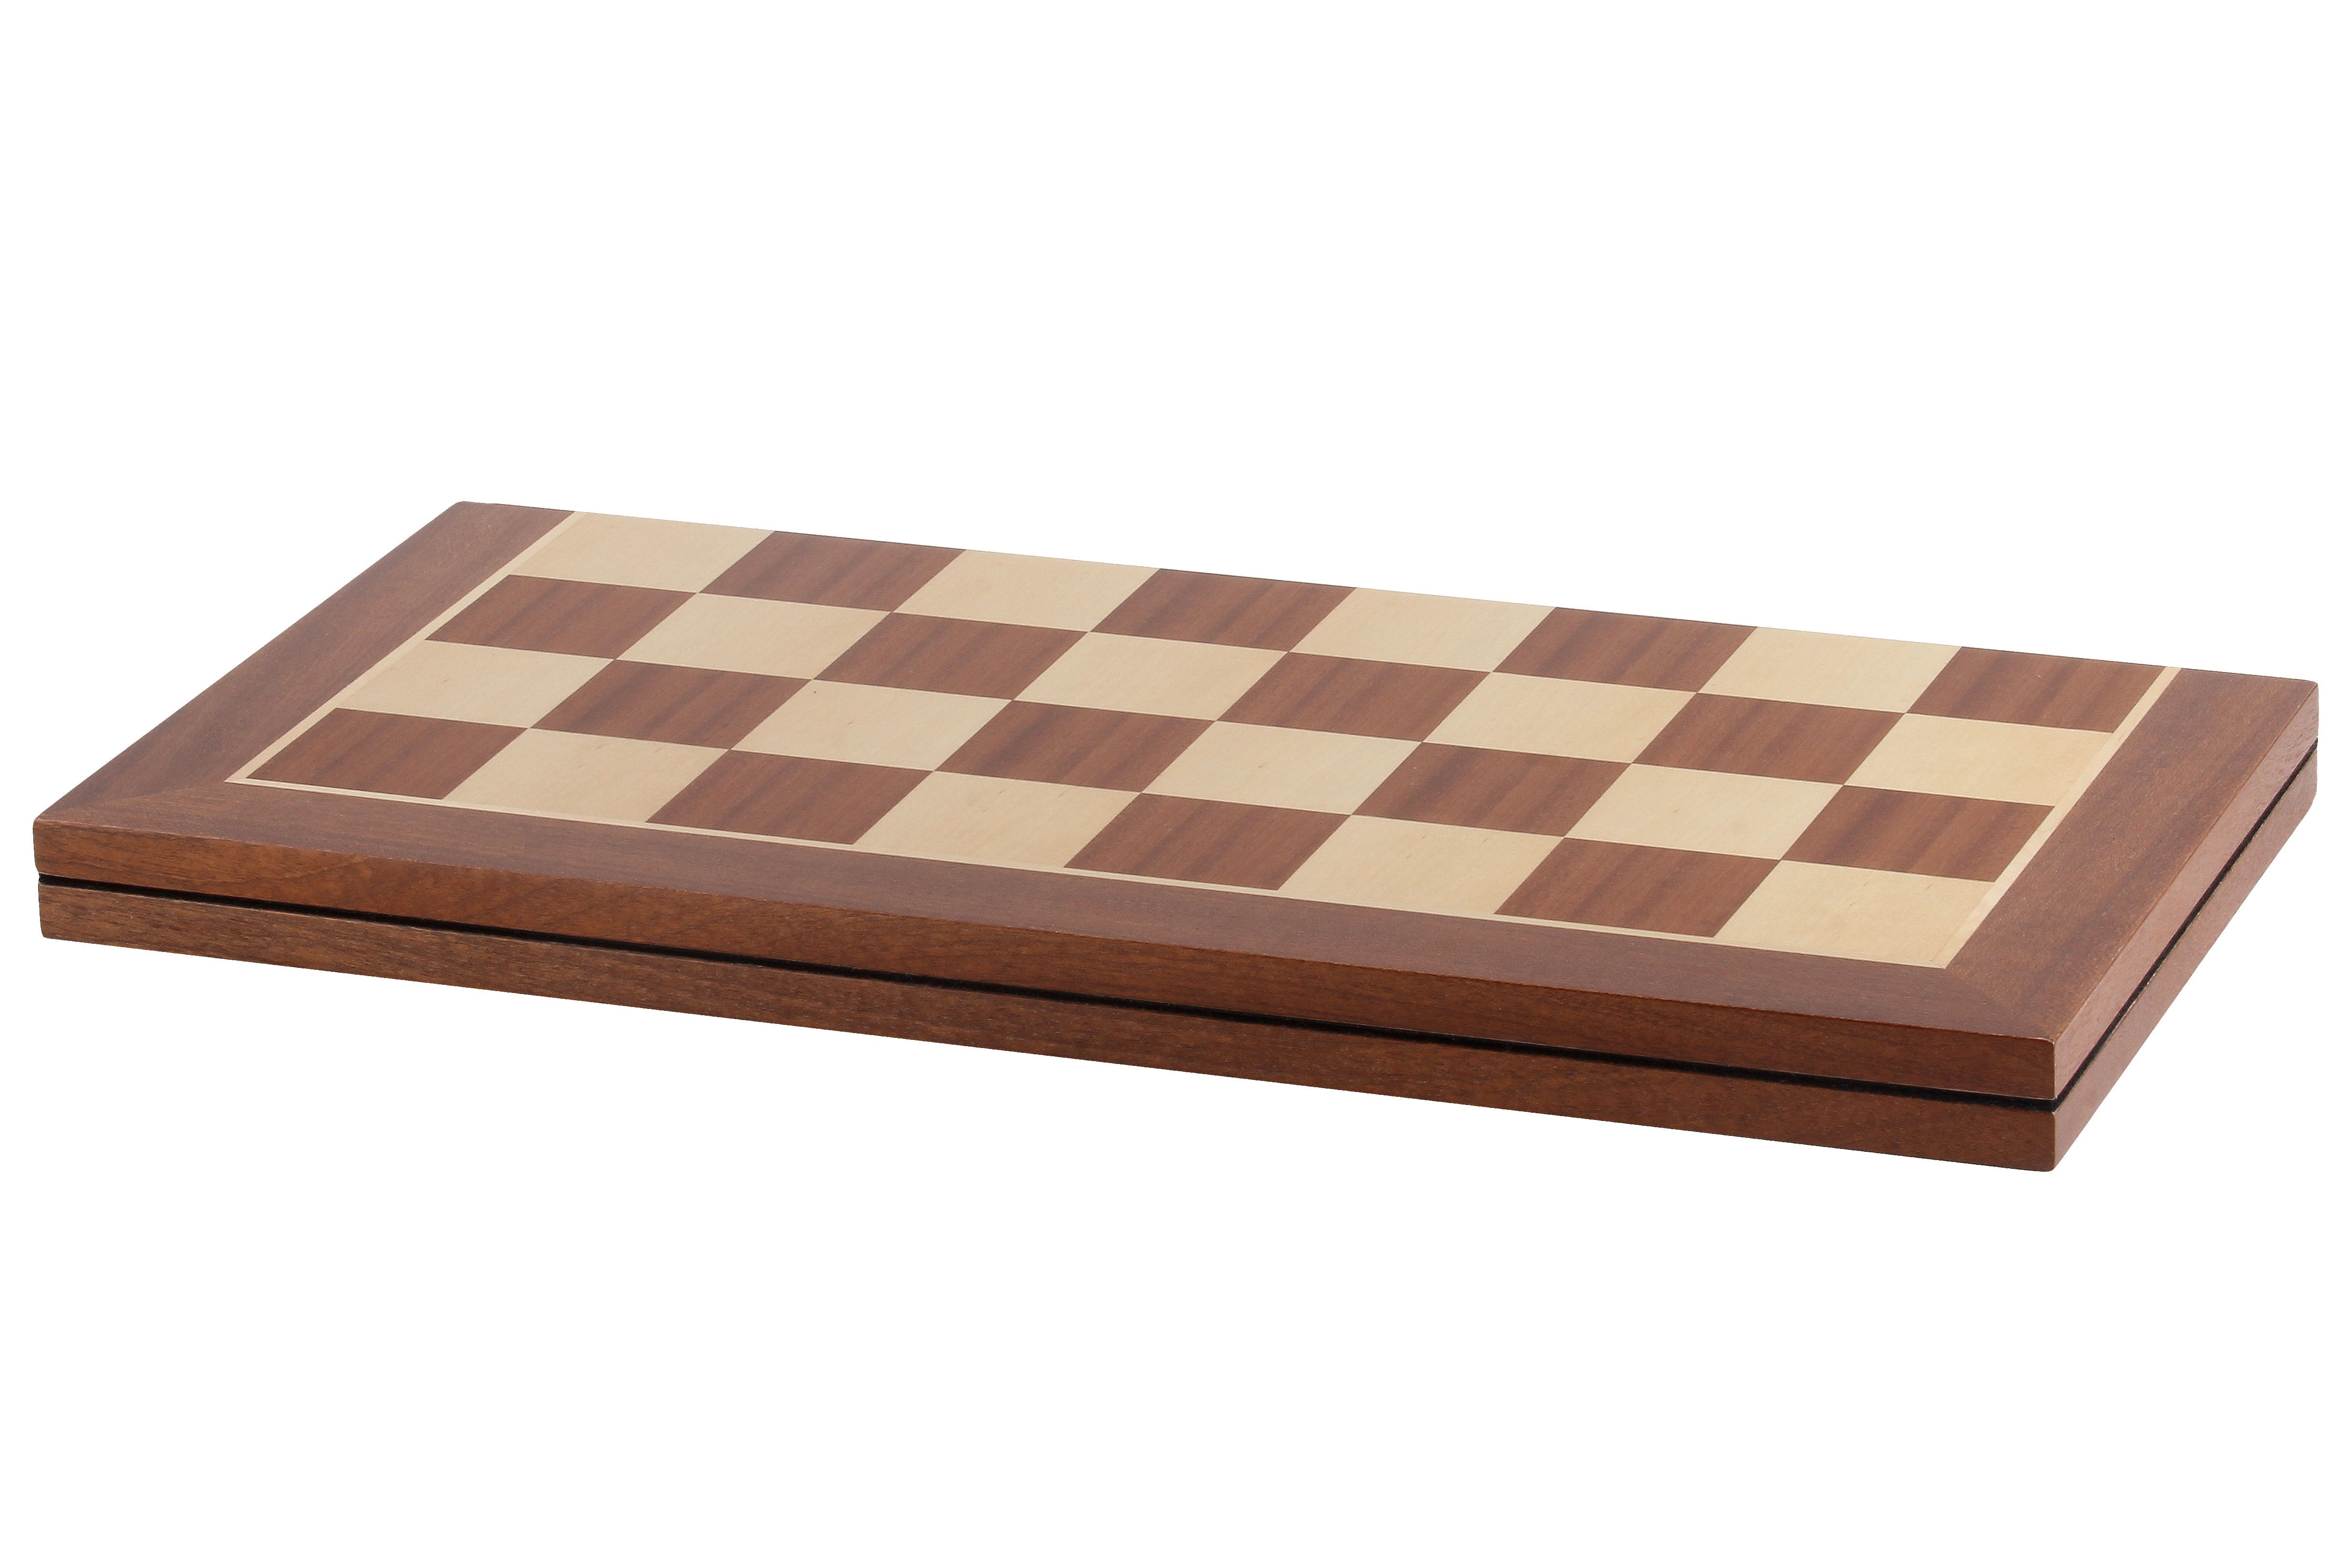 Turnier Schachbrett aus Mahagoni und Buchahorn, klappbar, Feldergröße 58 mm